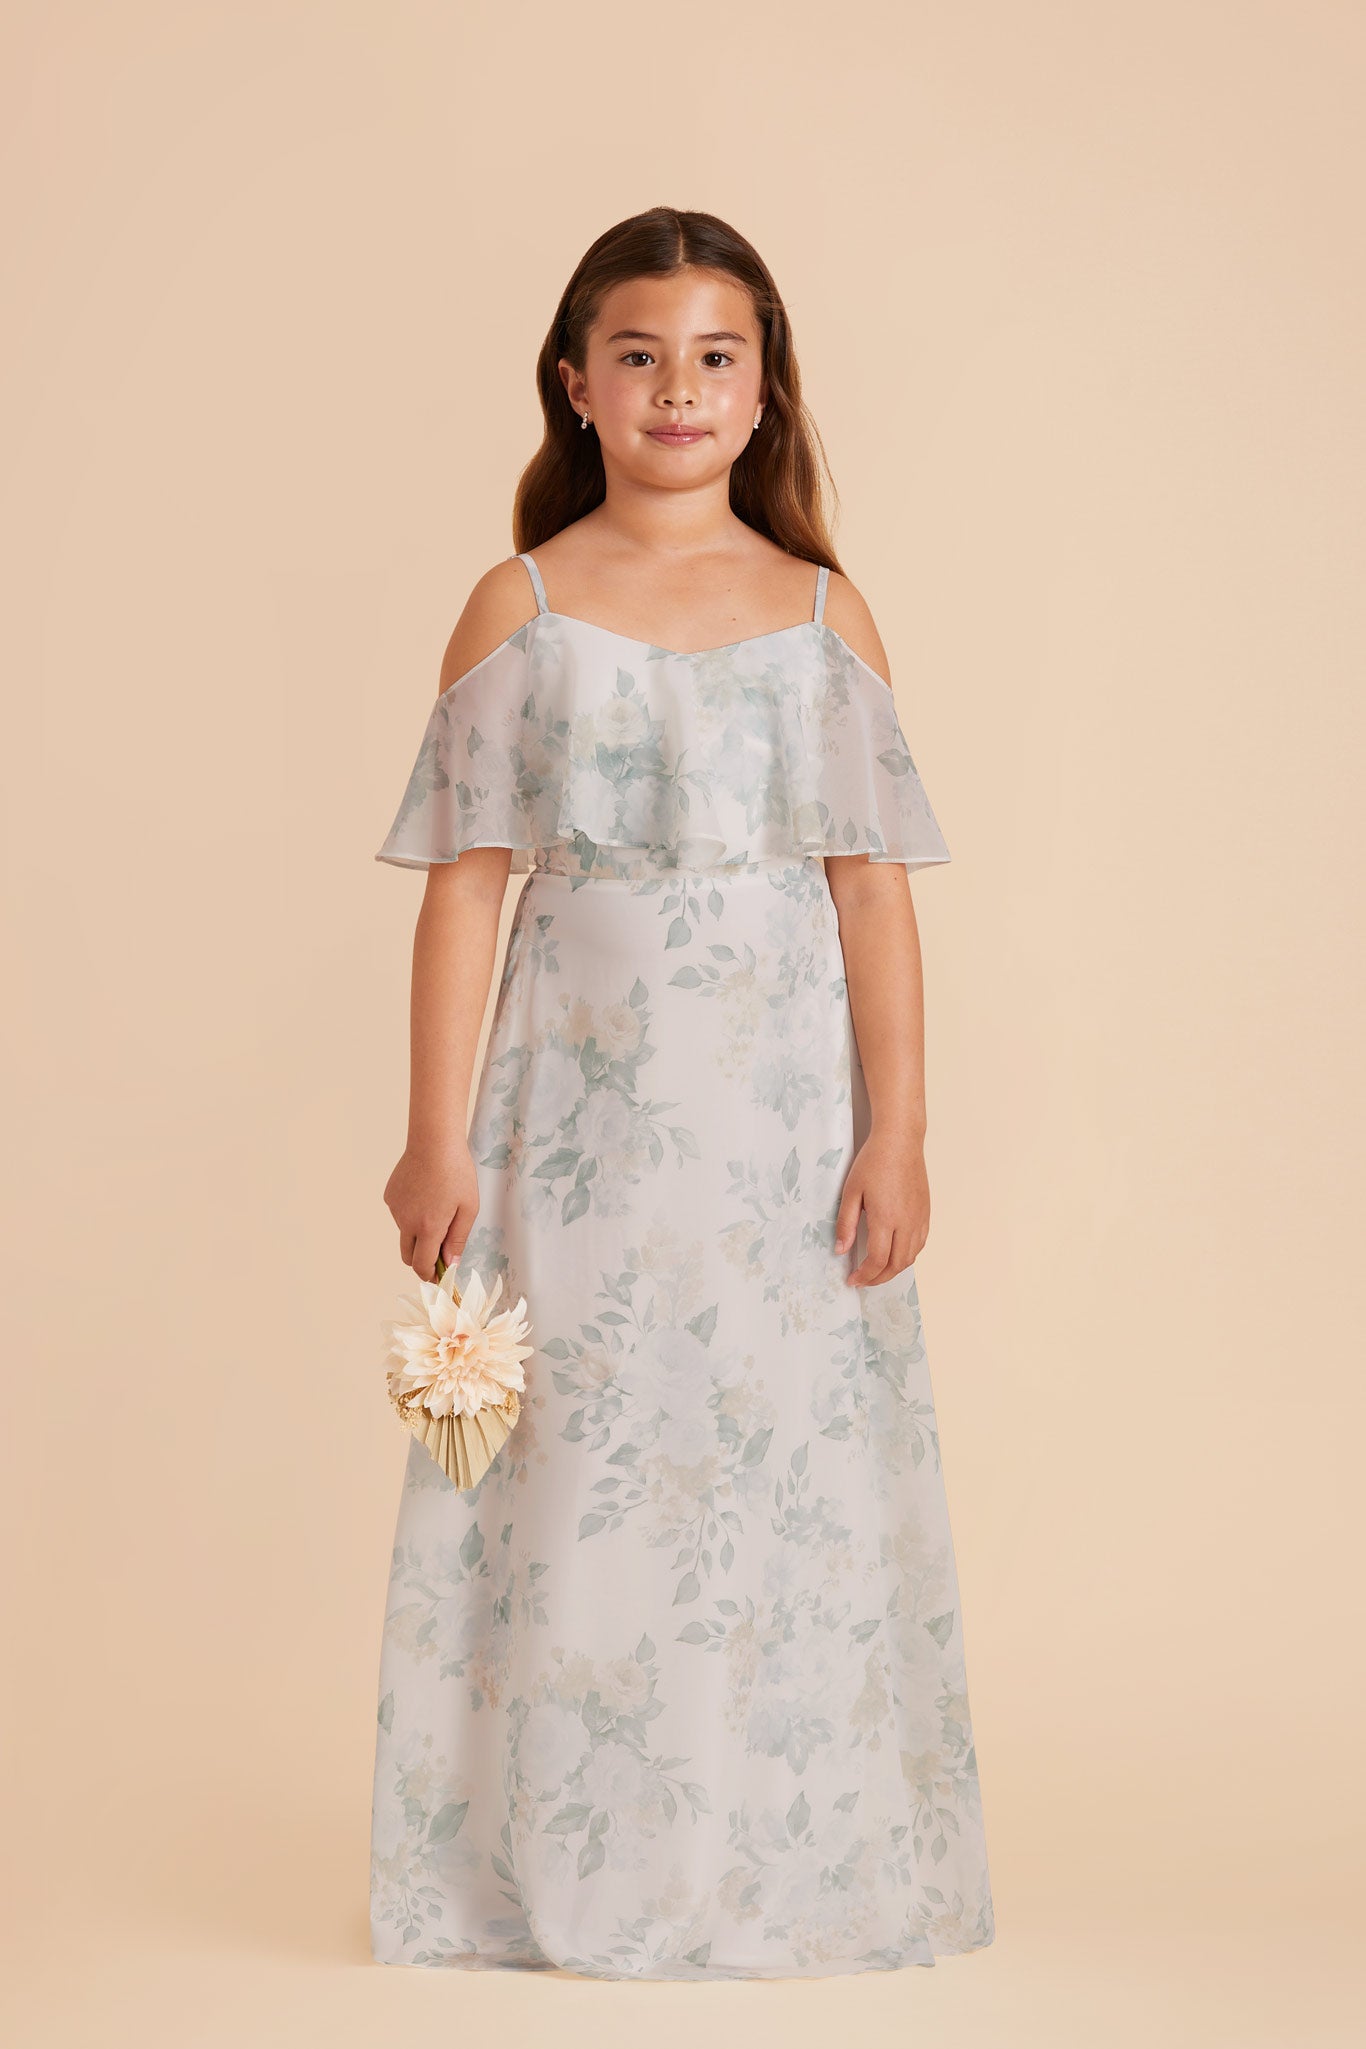  Sage Spring Garden Janie Convertible Junior Dress by Birdy Grey